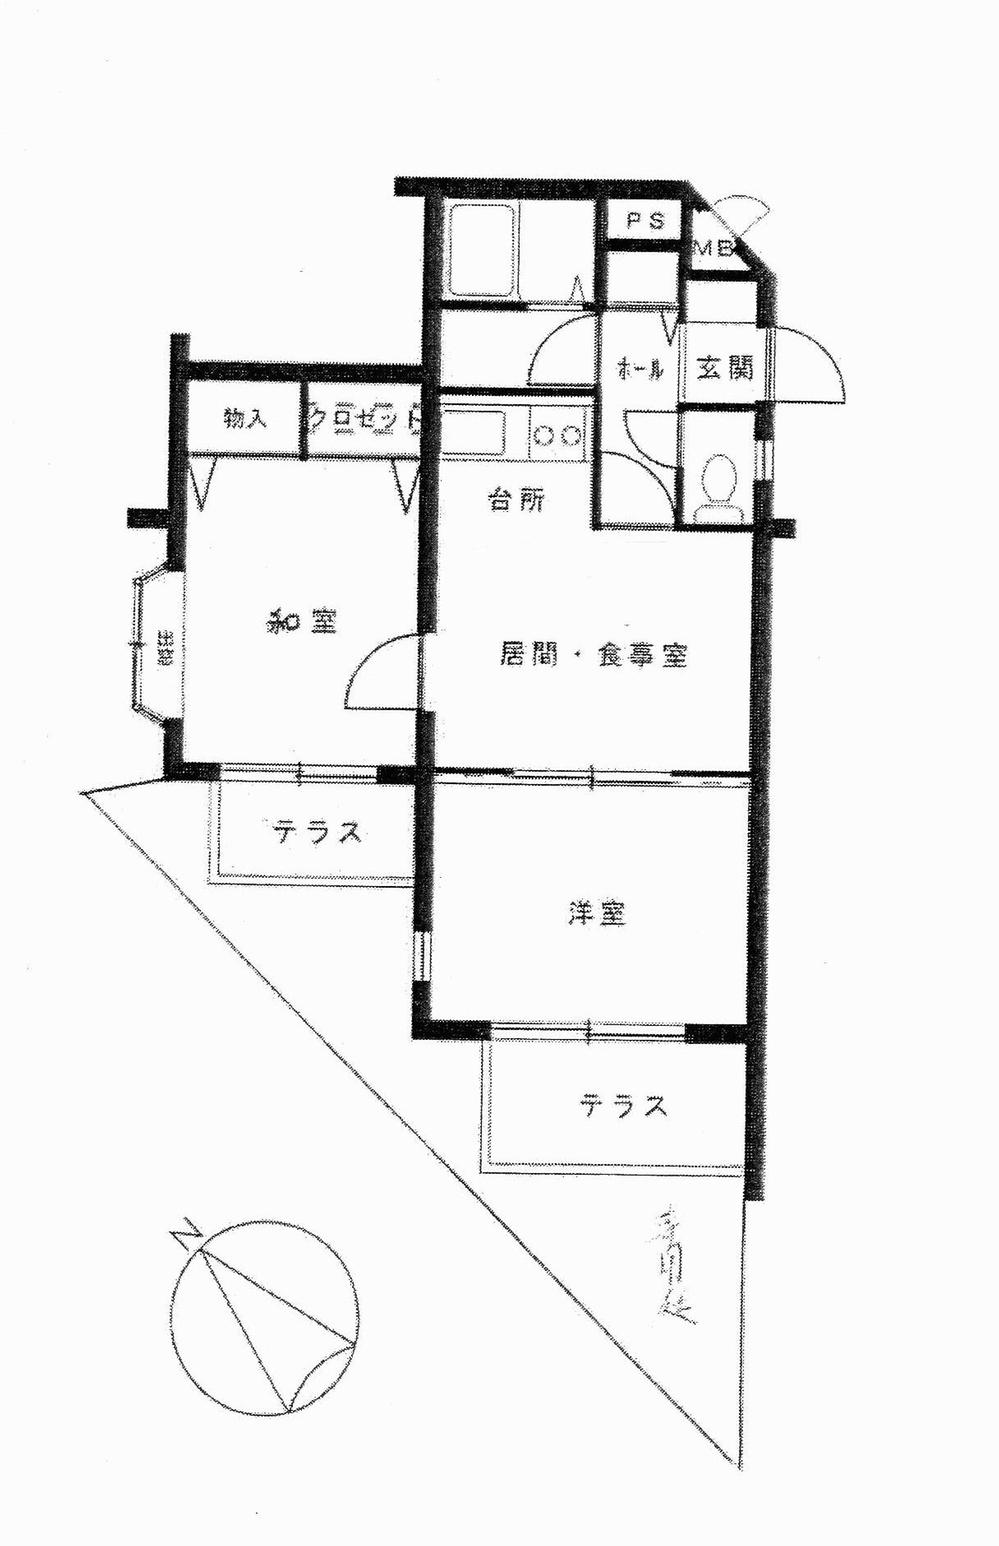 Floor plan. 2DK, Price 17.5 million yen, Footprint 43.6 sq m